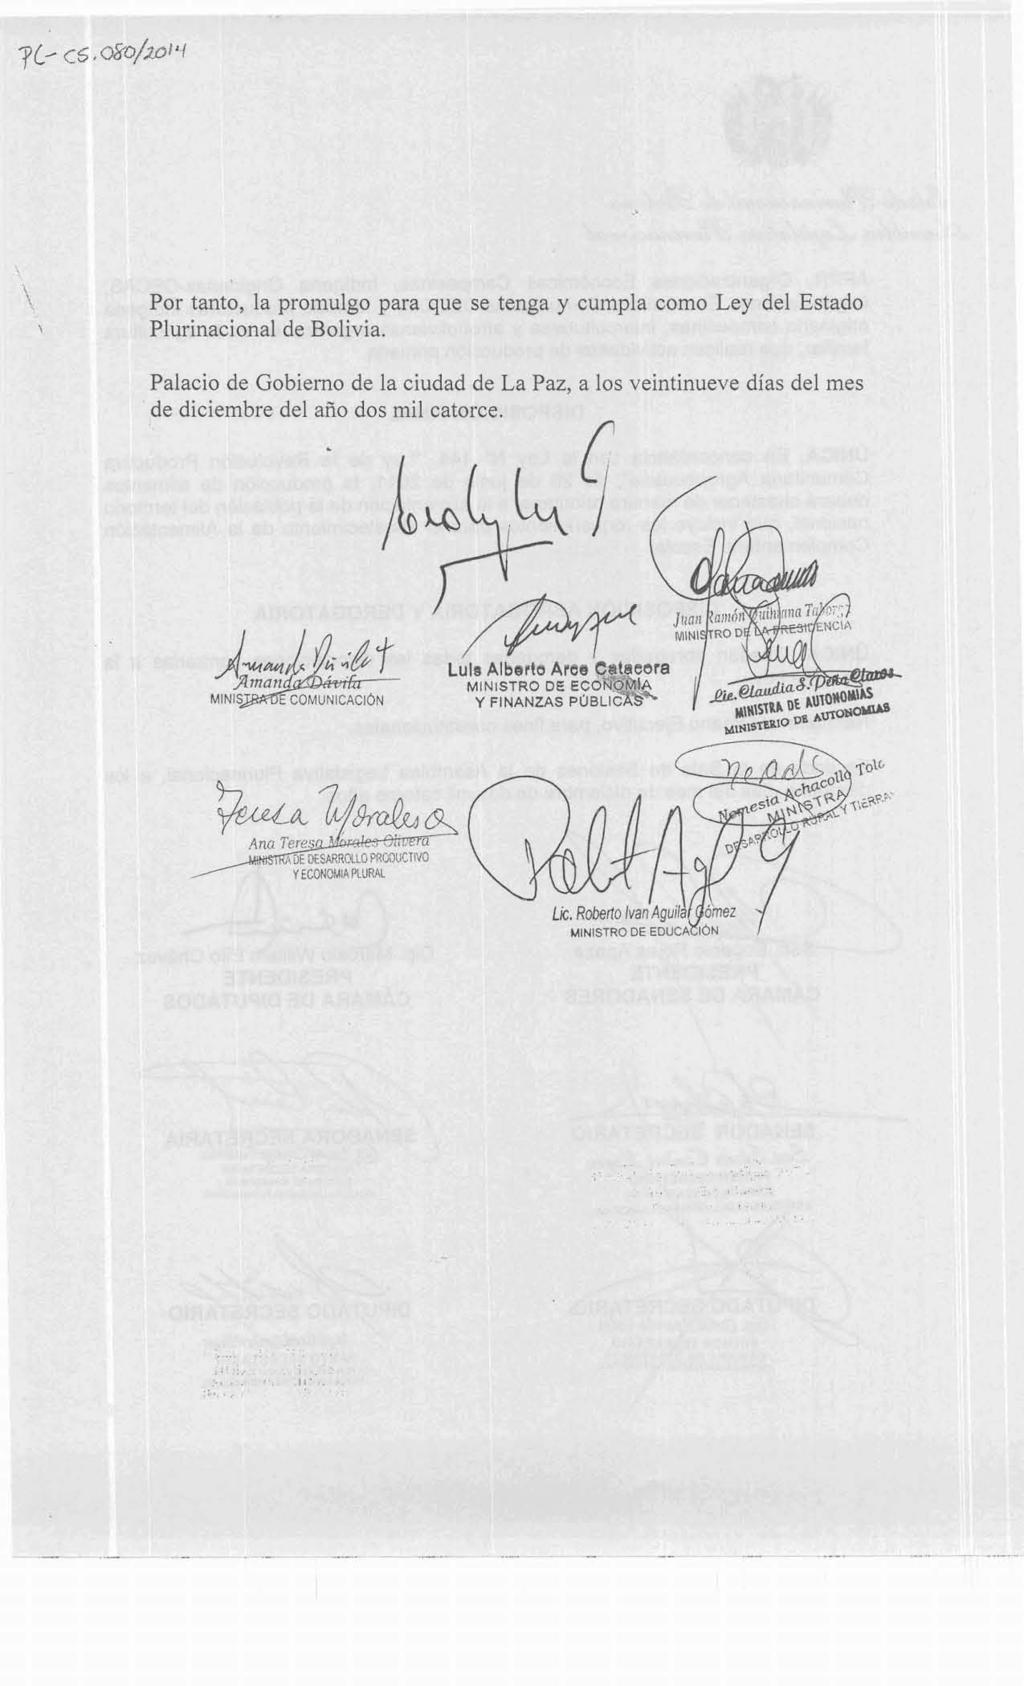 '> Por tanto, la promulgo para que se tenga y cumpla como Ley del Estado \ Plurinacional de Bolivia.